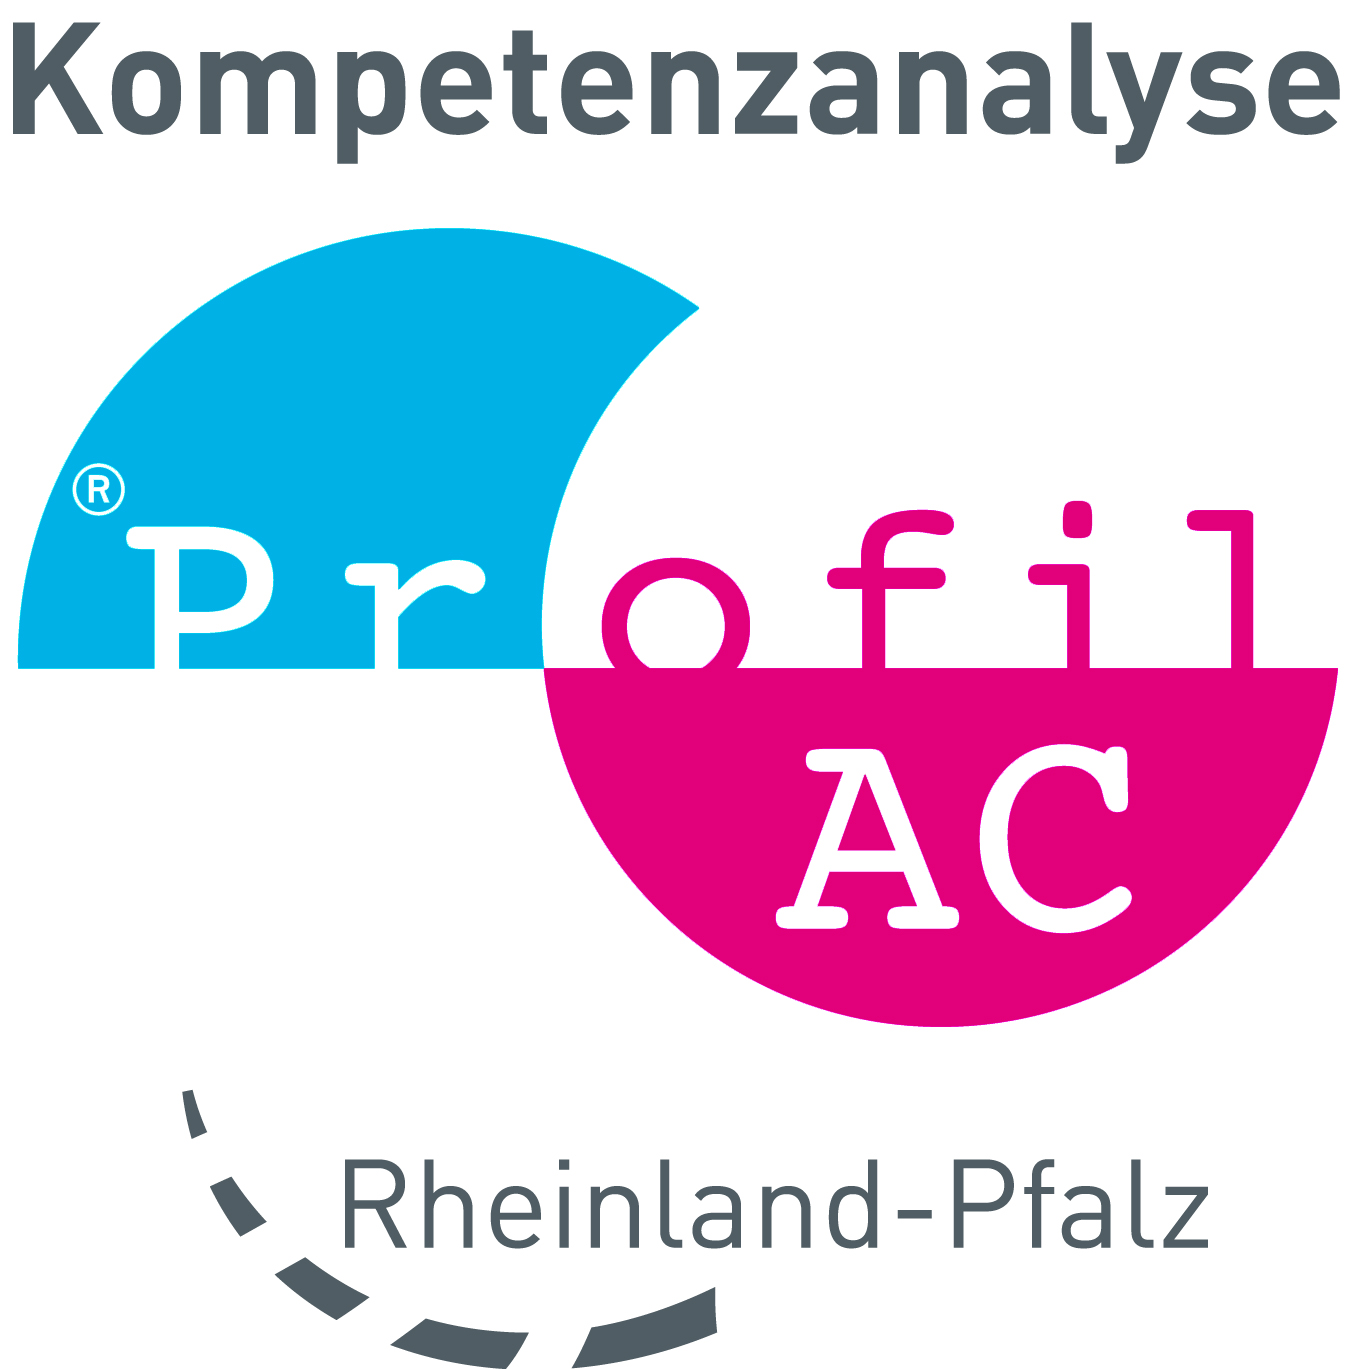 ProfilACLogo Rheinland Pfalz 